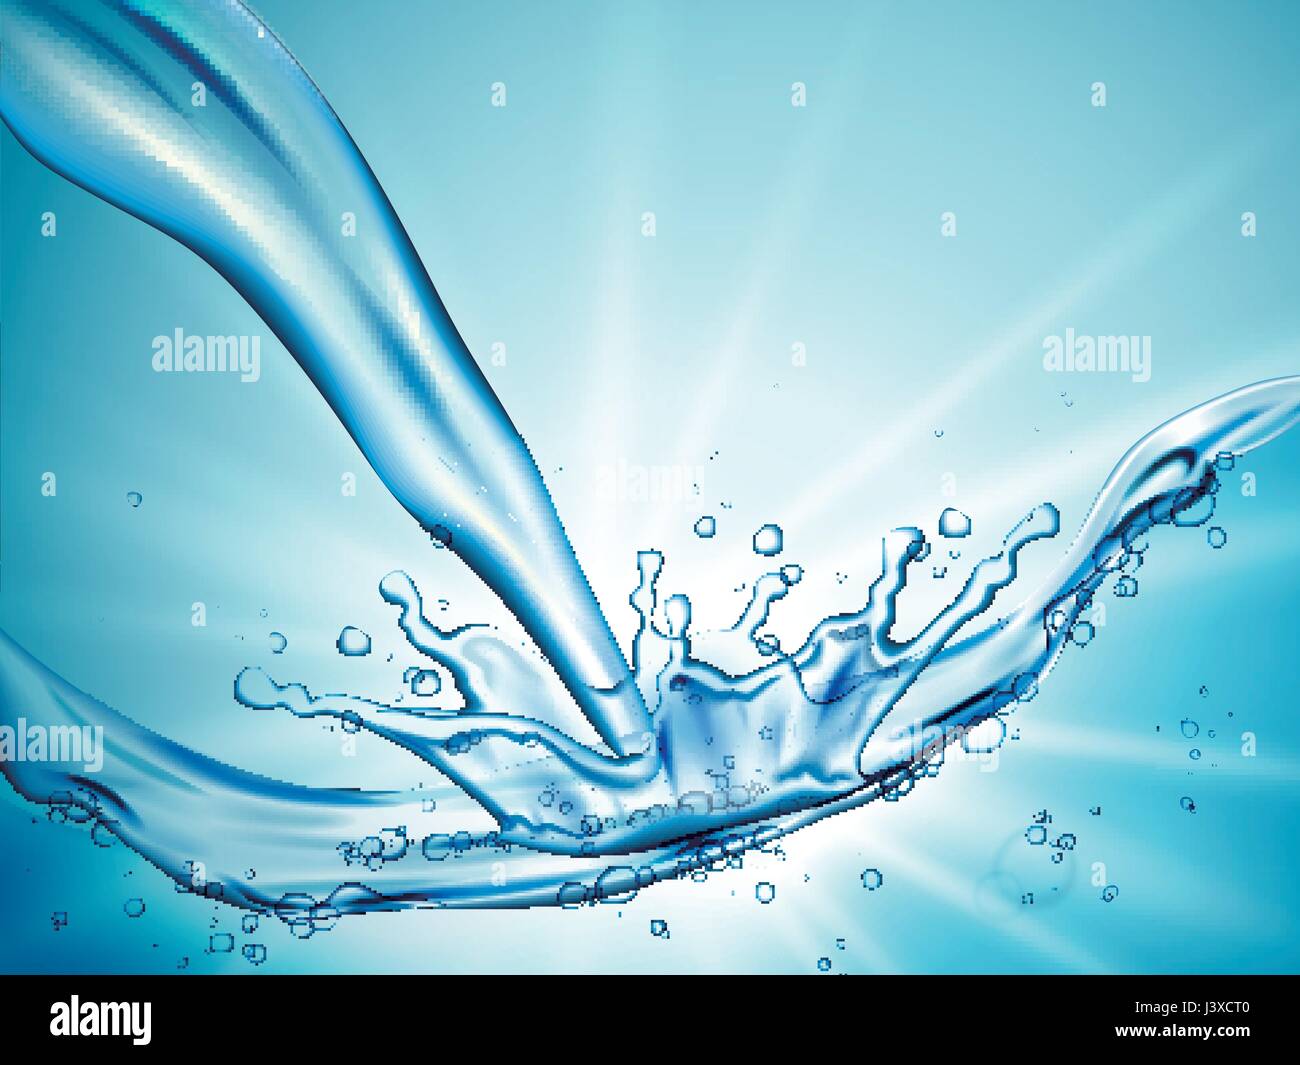 Verter el agua y salpicaduras como efecto especial, la luz de fondo azul ilustración 3d Ilustración del Vector